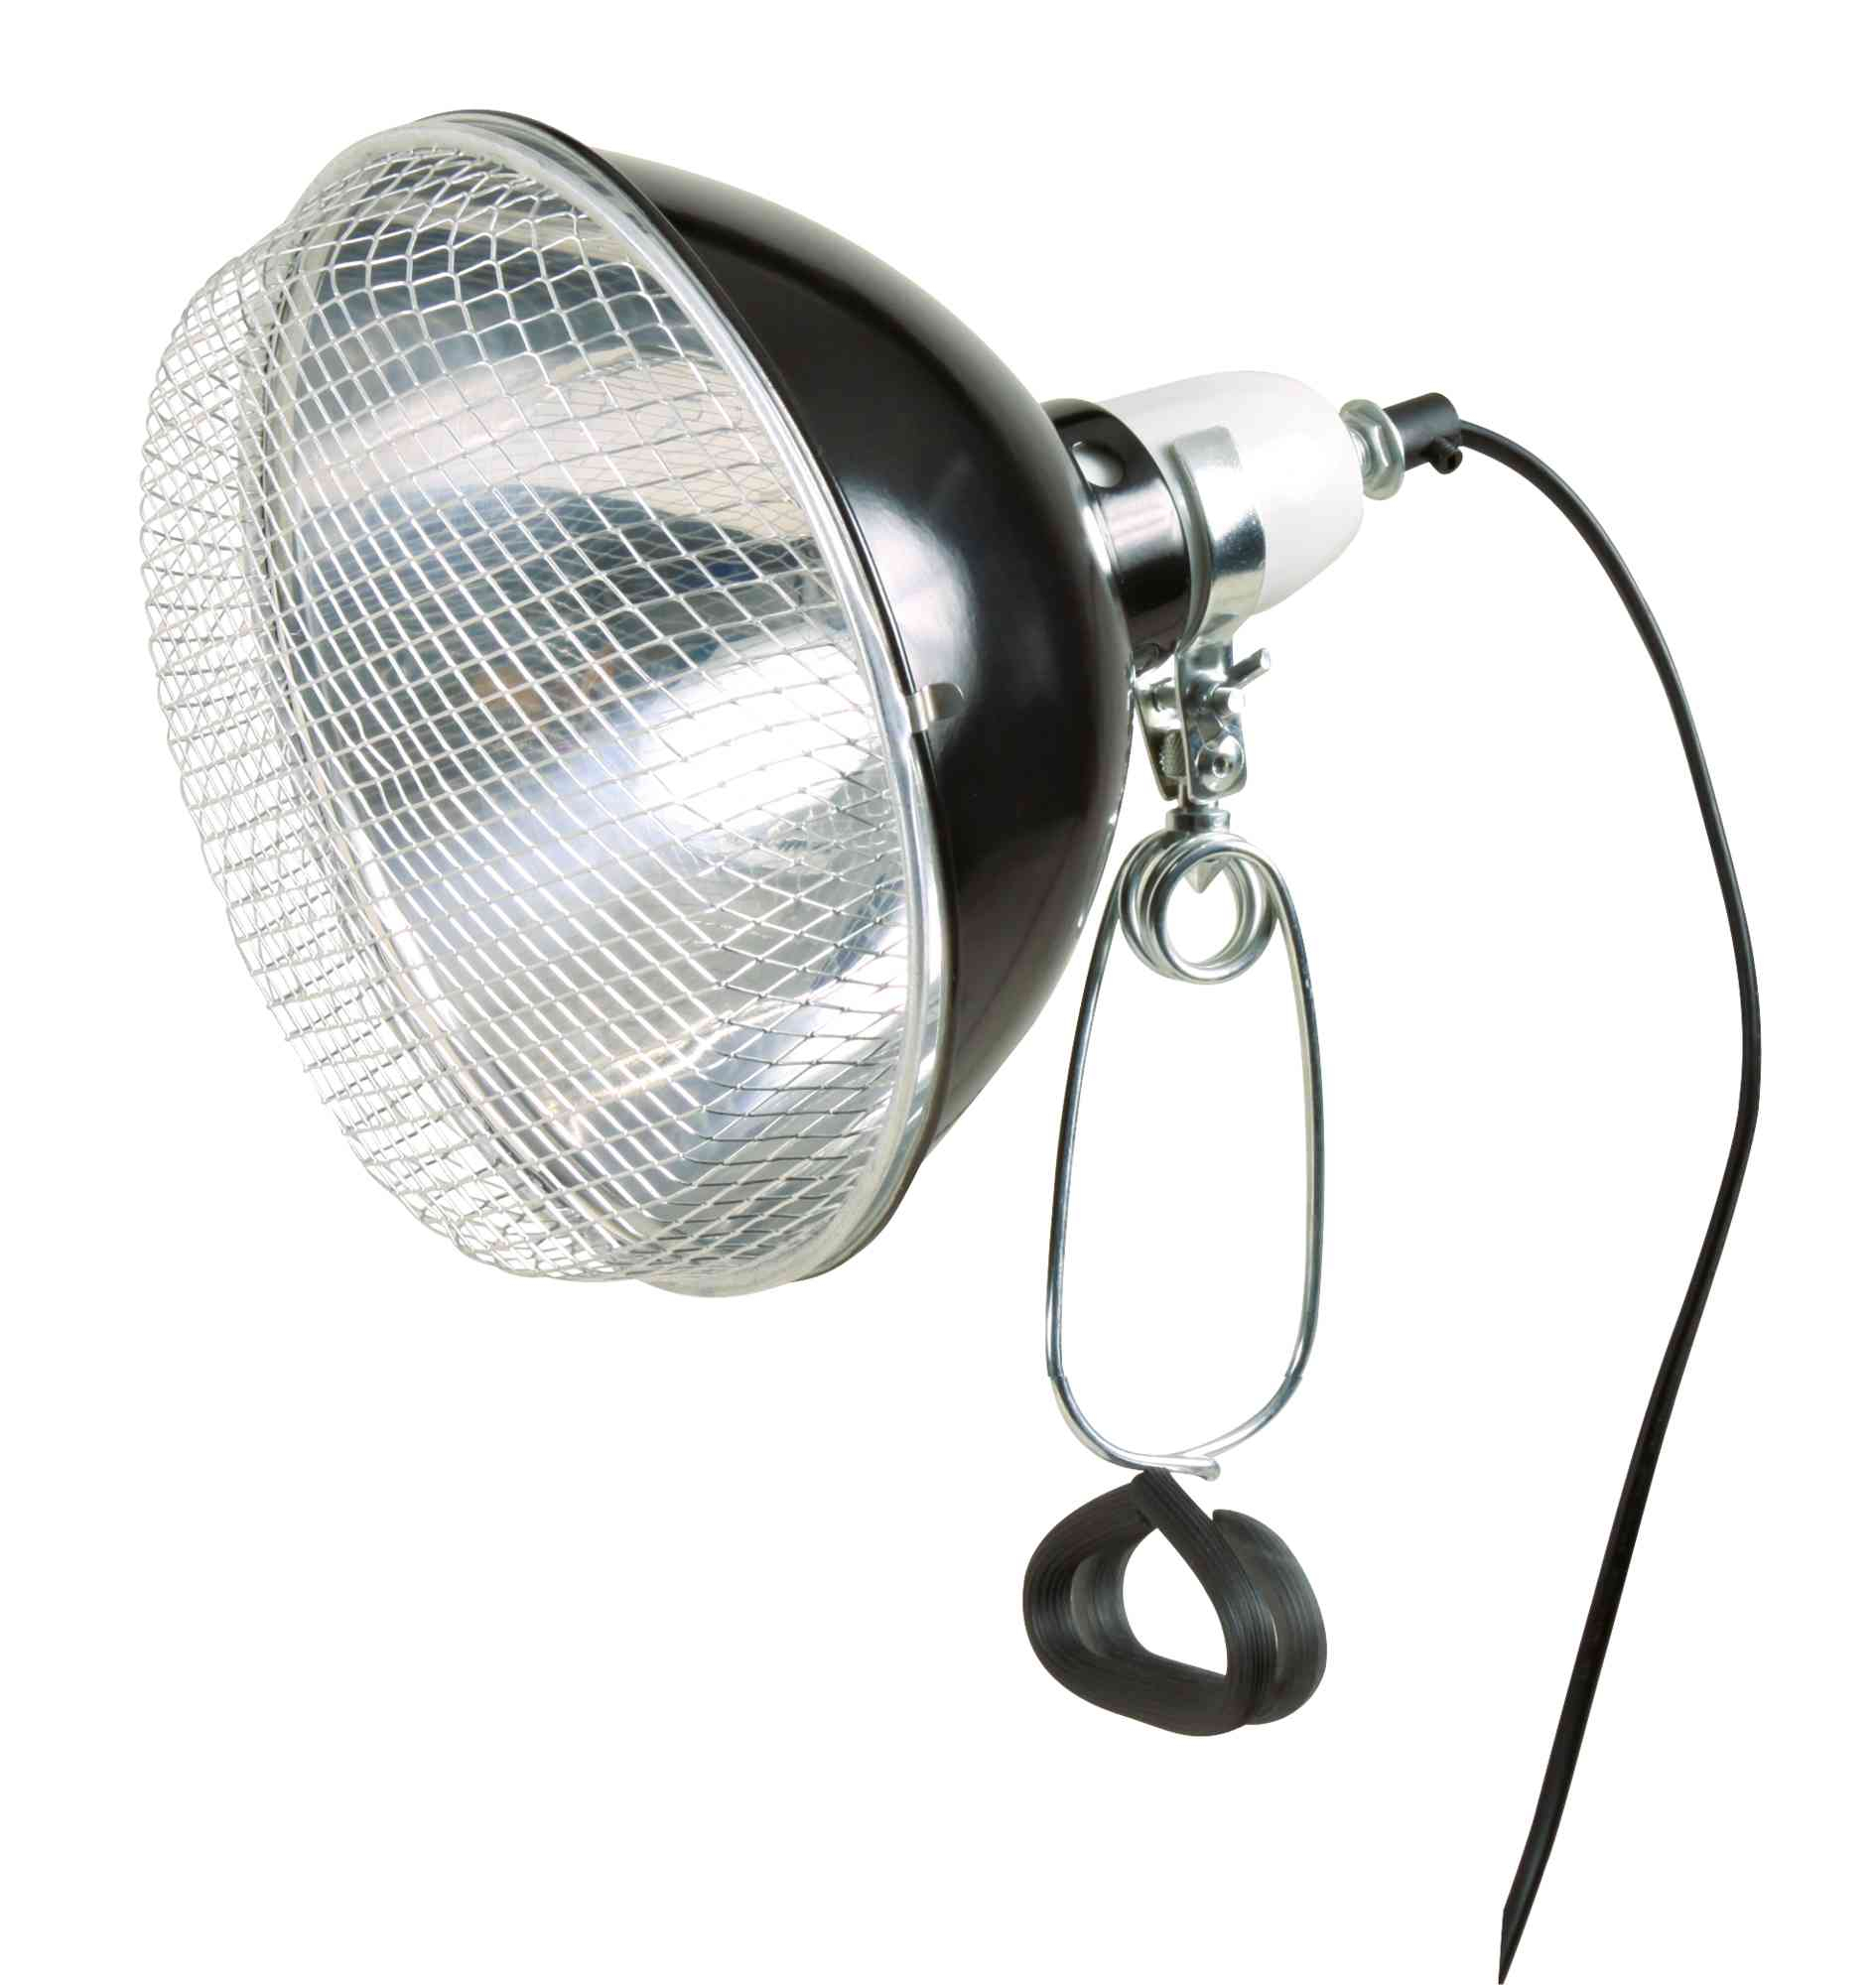 Reflectorlamp met clip